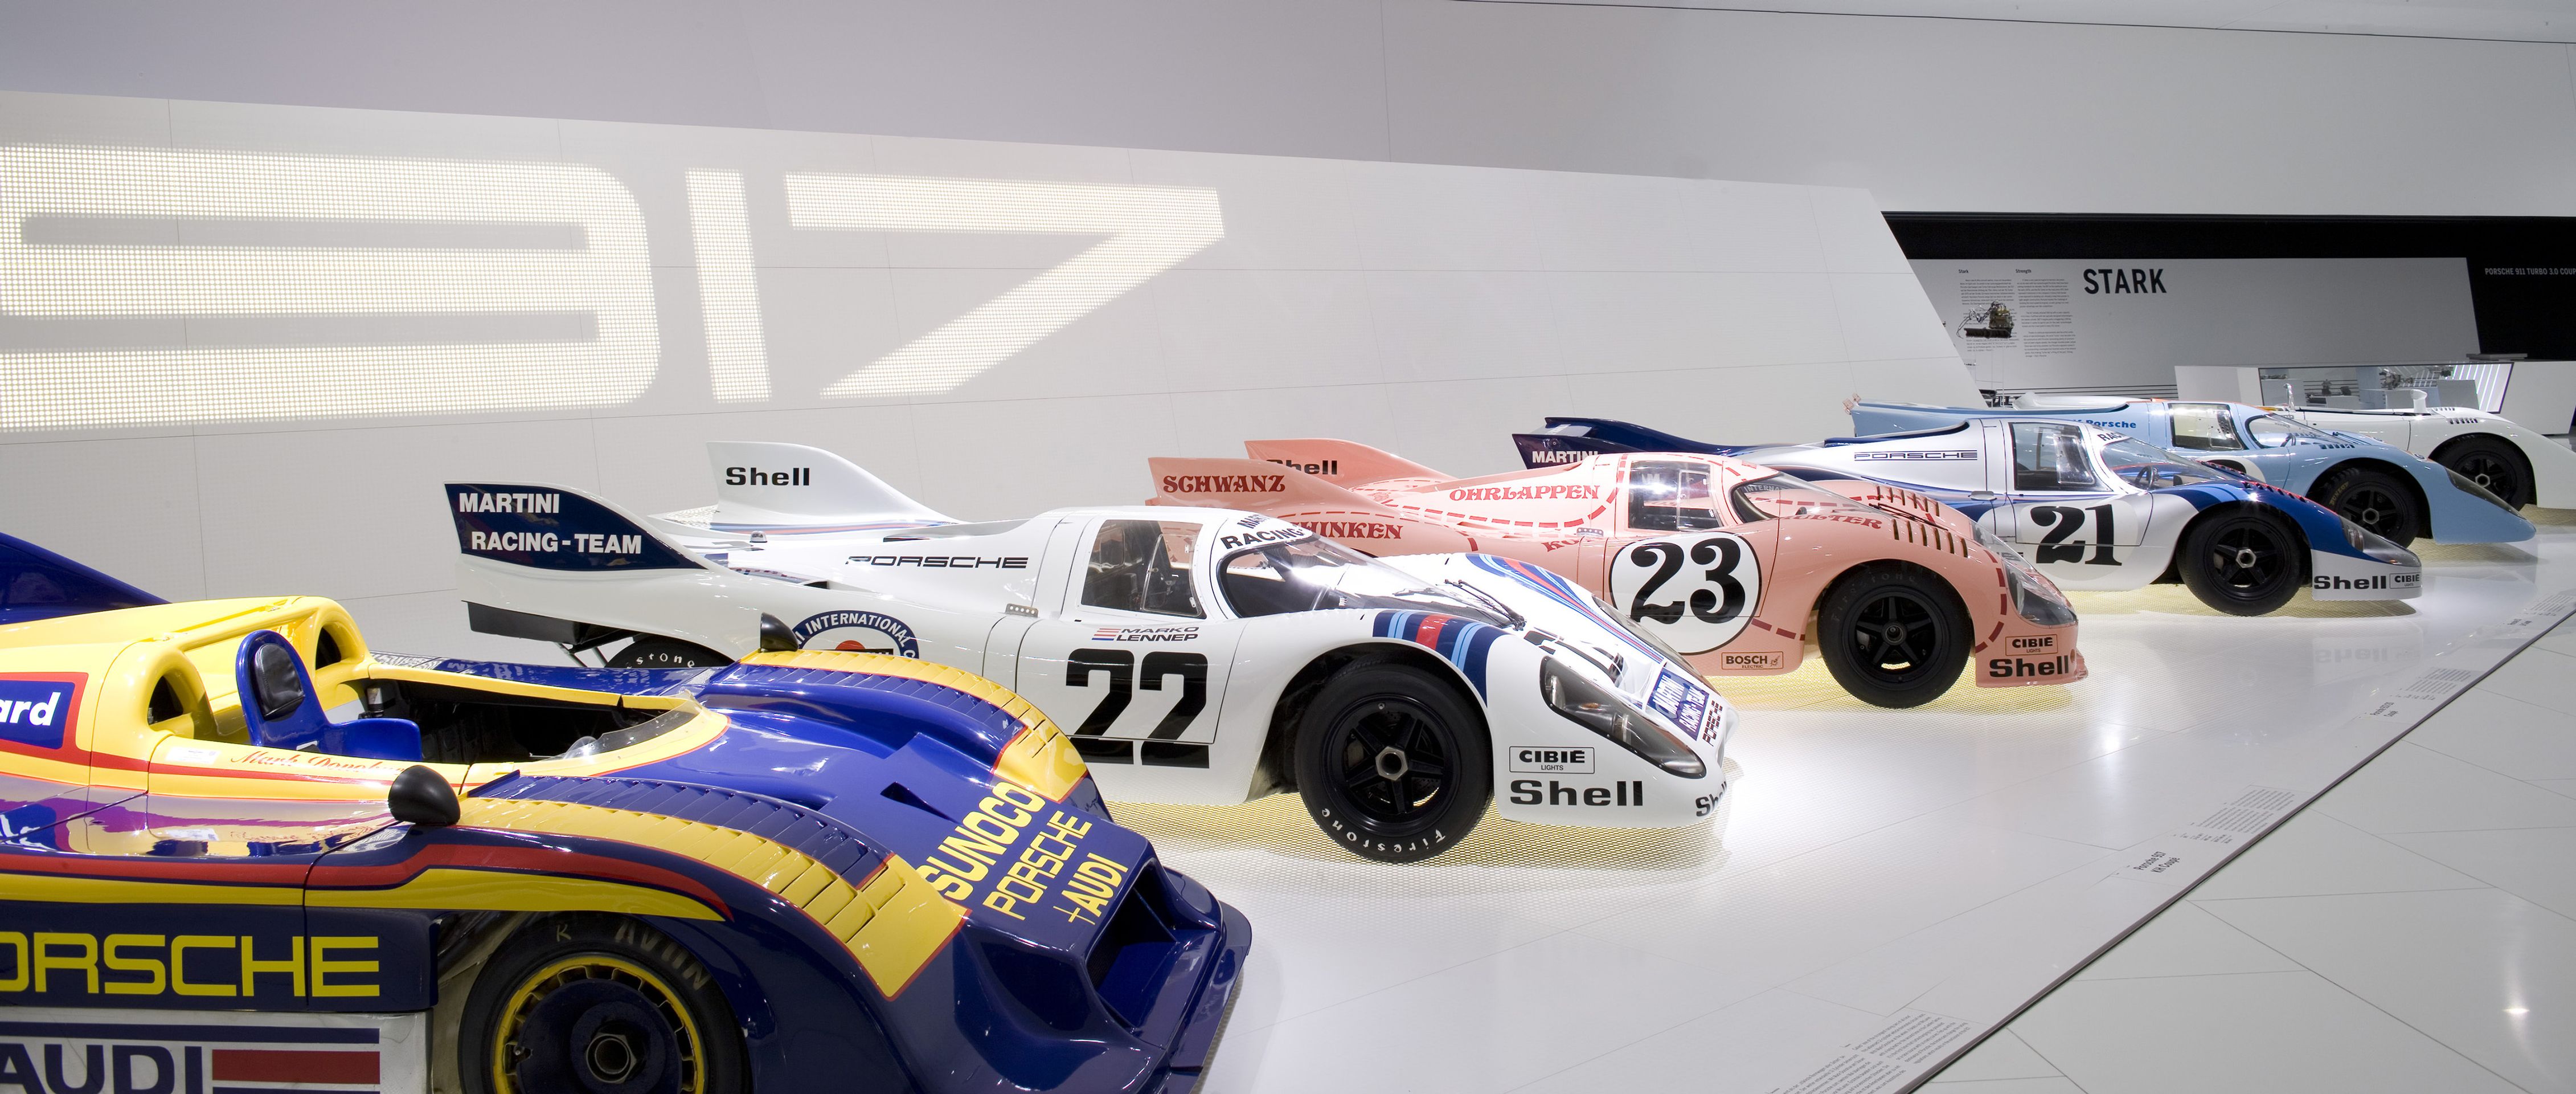 Galerie Porsche - 2 - GALERIE: Muezum Porsche (10/11)